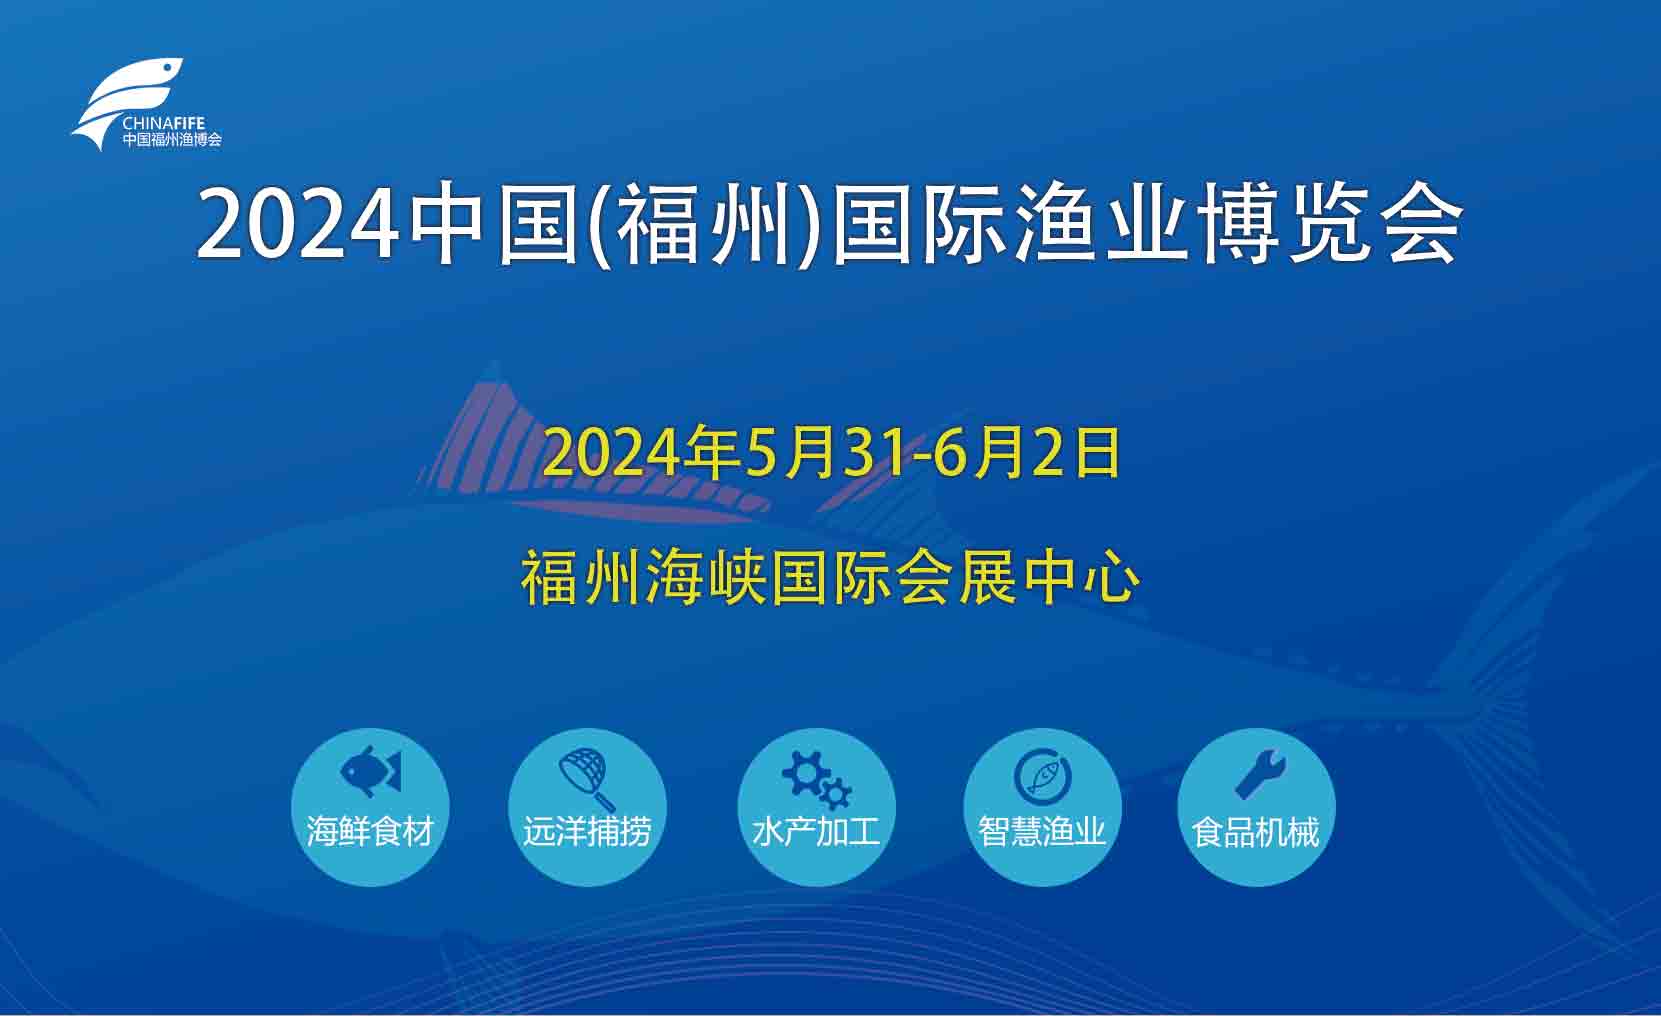 2024年第十九届福州渔博会|主办荟源展览